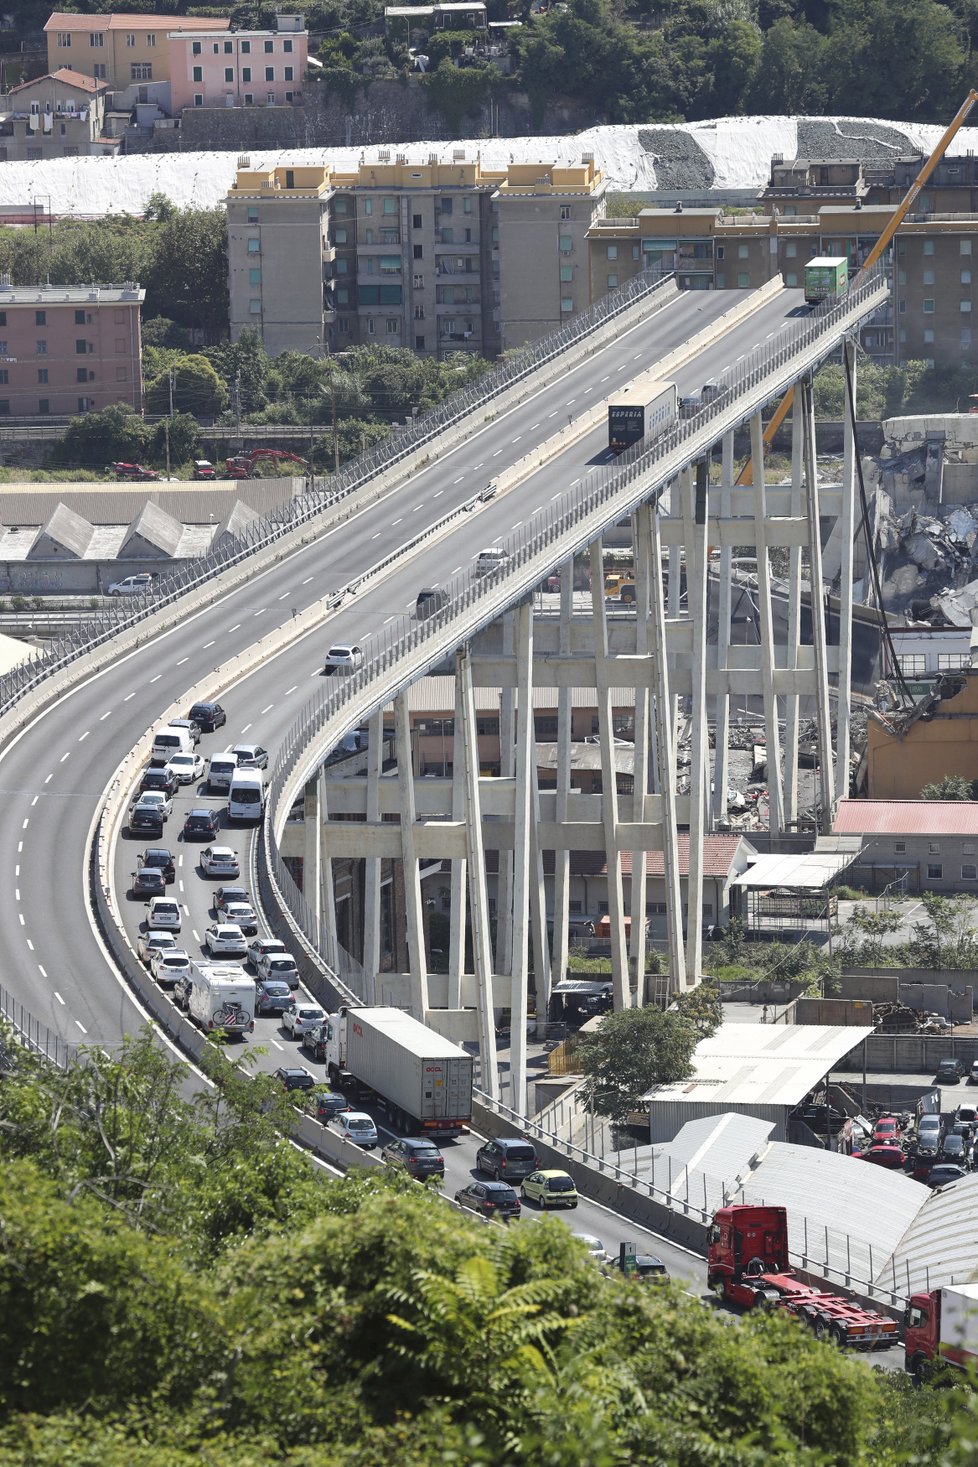 Pád Morandiho mostu je podle odborníků jen začátek, v ohrožení jsou miliony staveb.